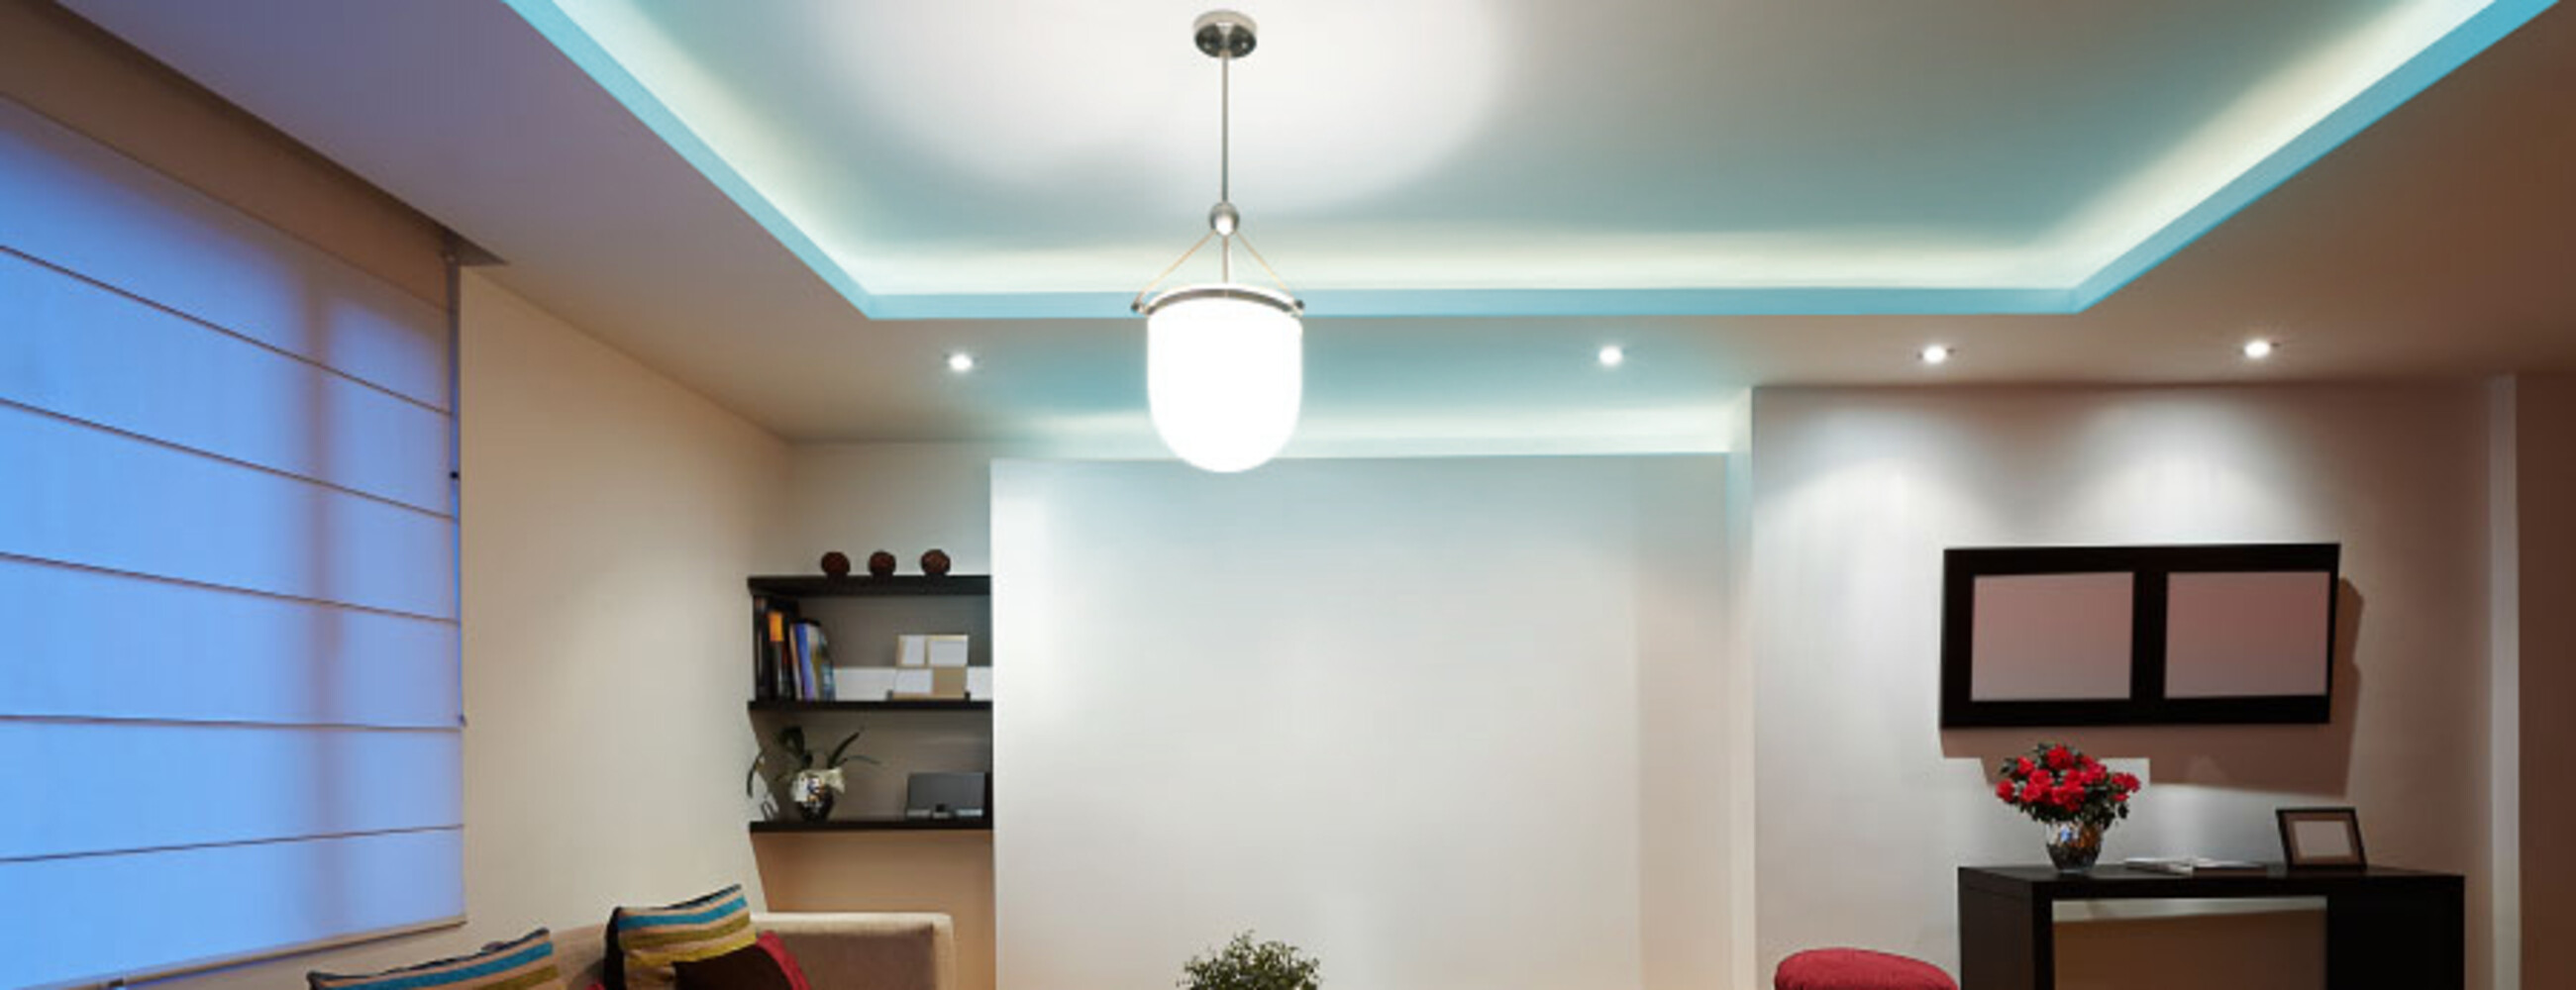 Premium LED Streifen von LED Universum mit smartem 24V Netzteil und intuitiver 2,4GHz Fernbedienung, ideal für den Einsatz im Smart Home